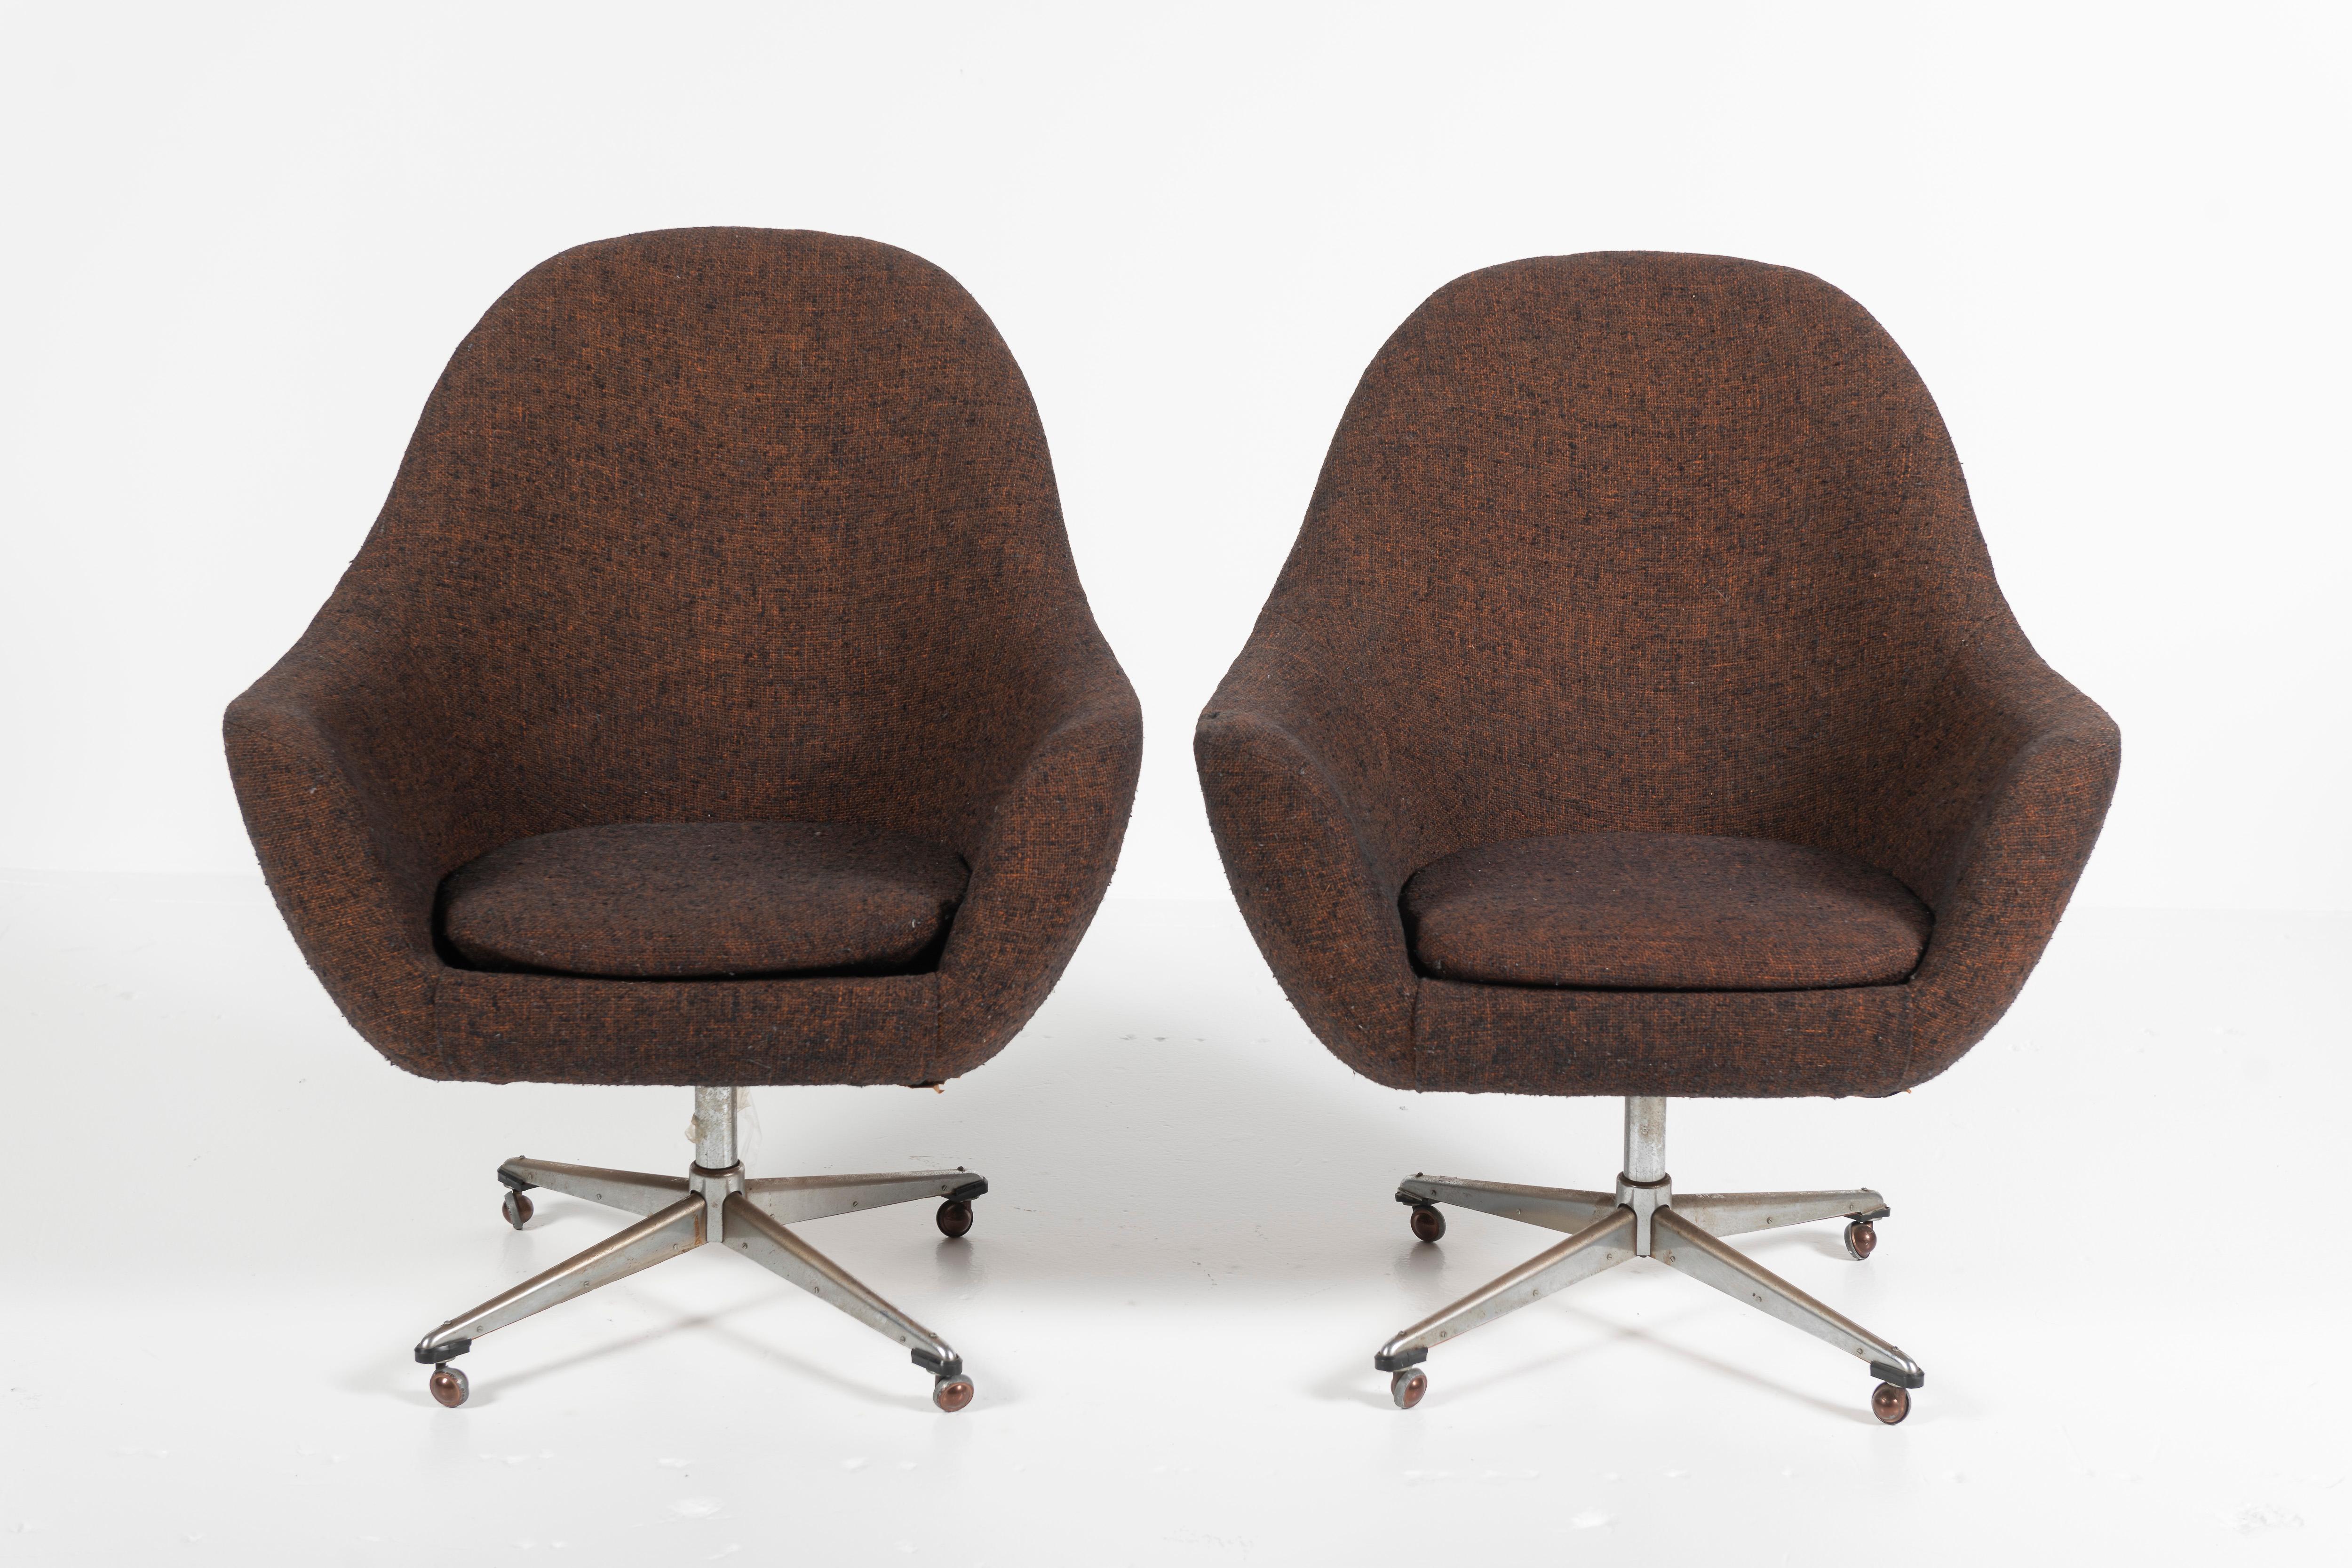 Cette paire moderne de fauteuils Pod Swivel en tweed de laine marron de Overman, Suède, a des pieds et des roulettes chromés. Le design classique utilise une mousse de haute qualité pour créer un siège confortable, également mis en valeur par la